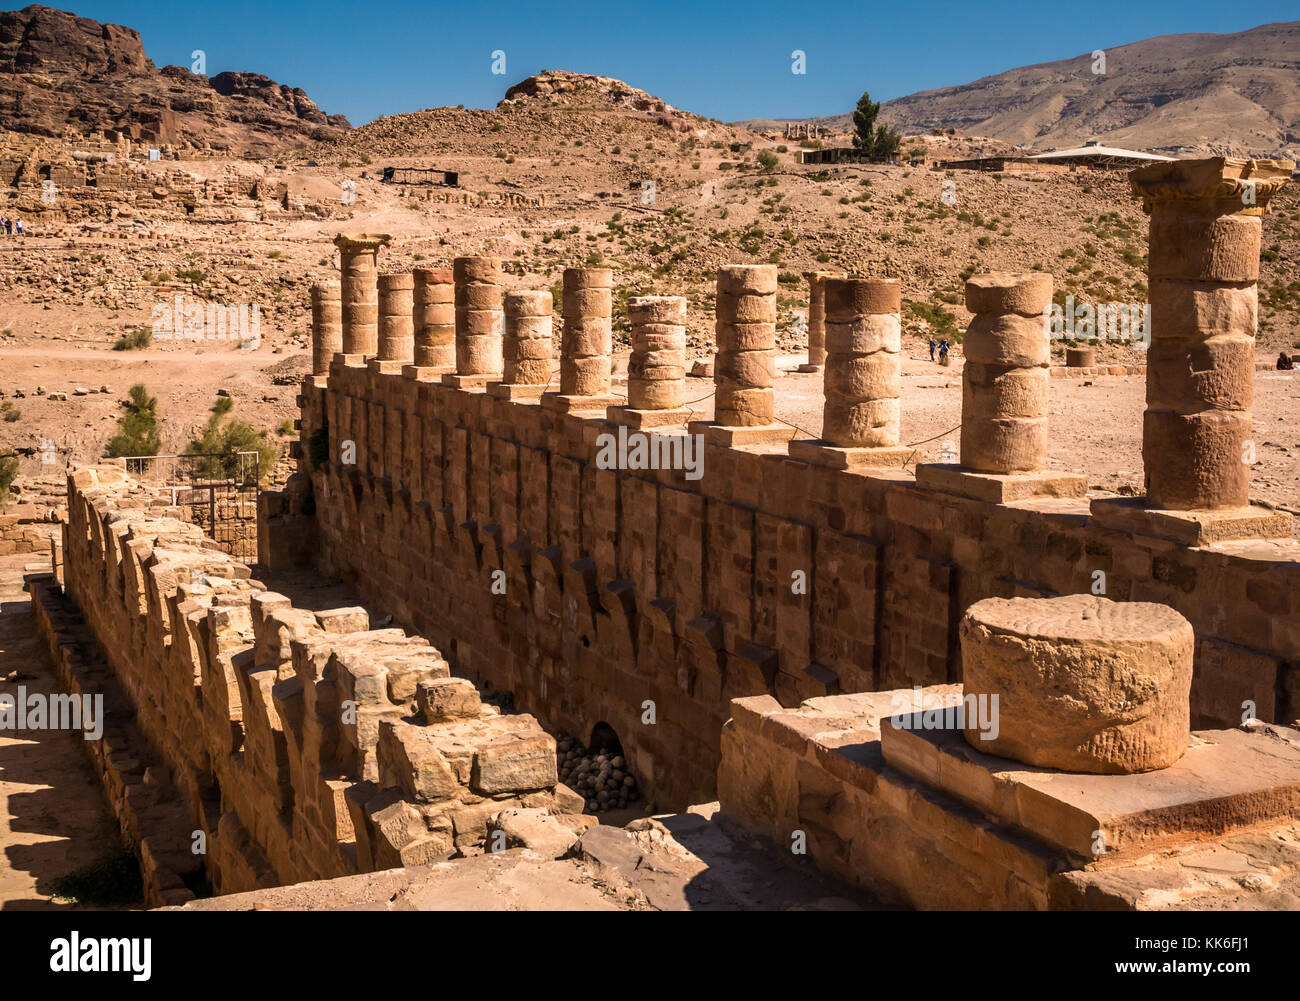 Righe di rovinato colonne corinzie presso il grande tempio, Petra sito archeologico, Giordania, Medio Oriente con cielo blu Foto Stock